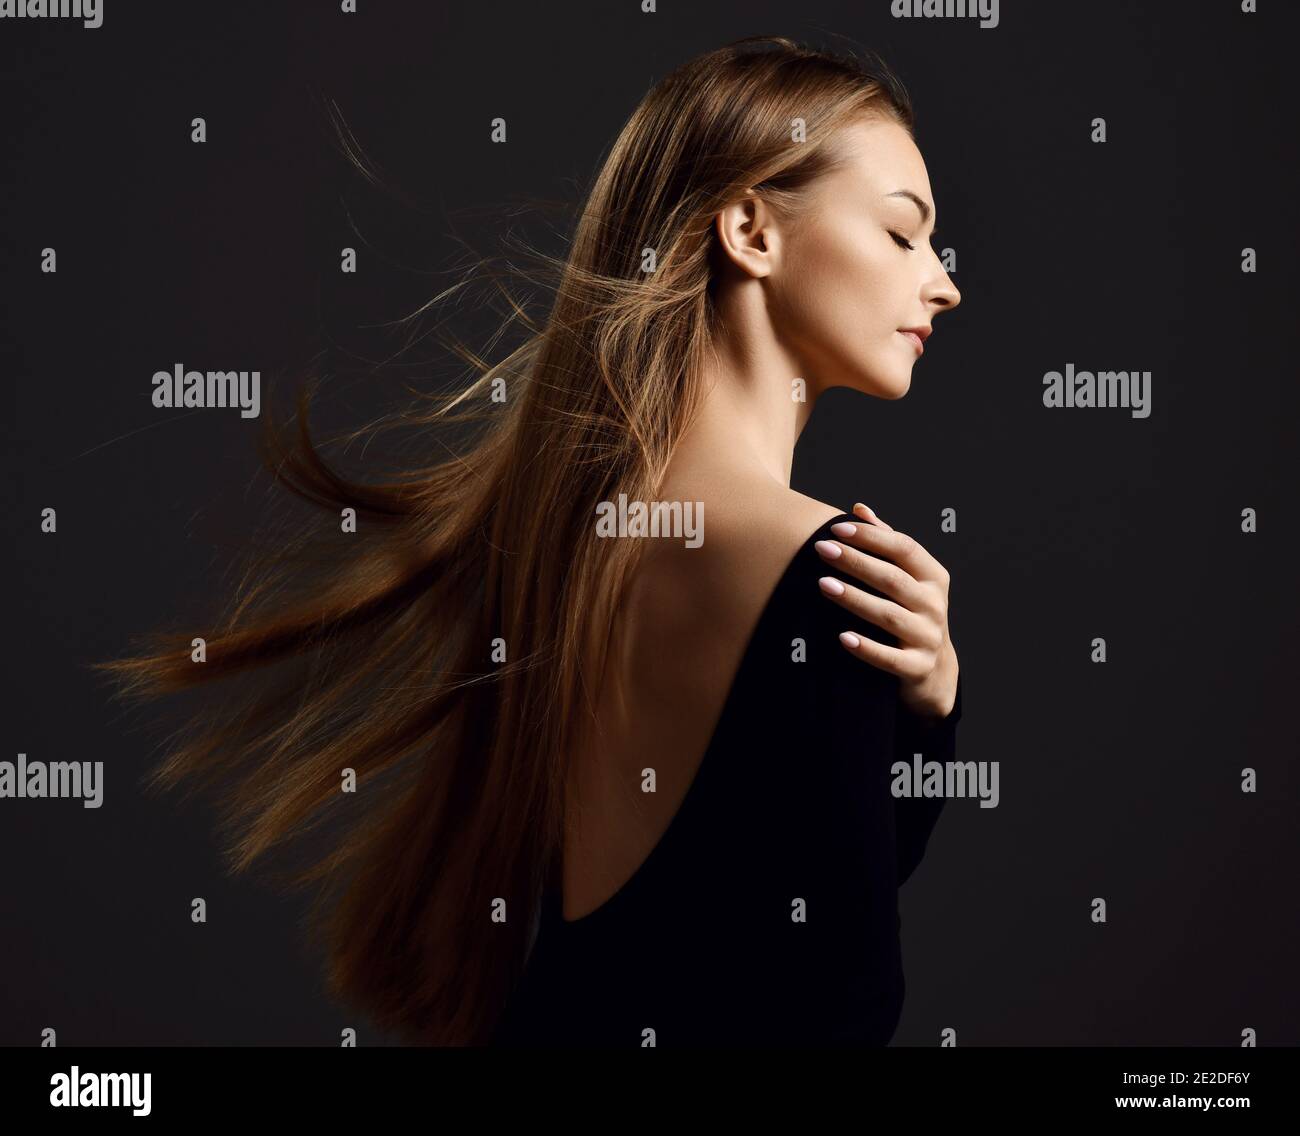 Profil von jungen schönen Frau mit langen seidigen geraden Fliegen Haare in schwarzem Körper mit geschlossenen Augen Stockfoto